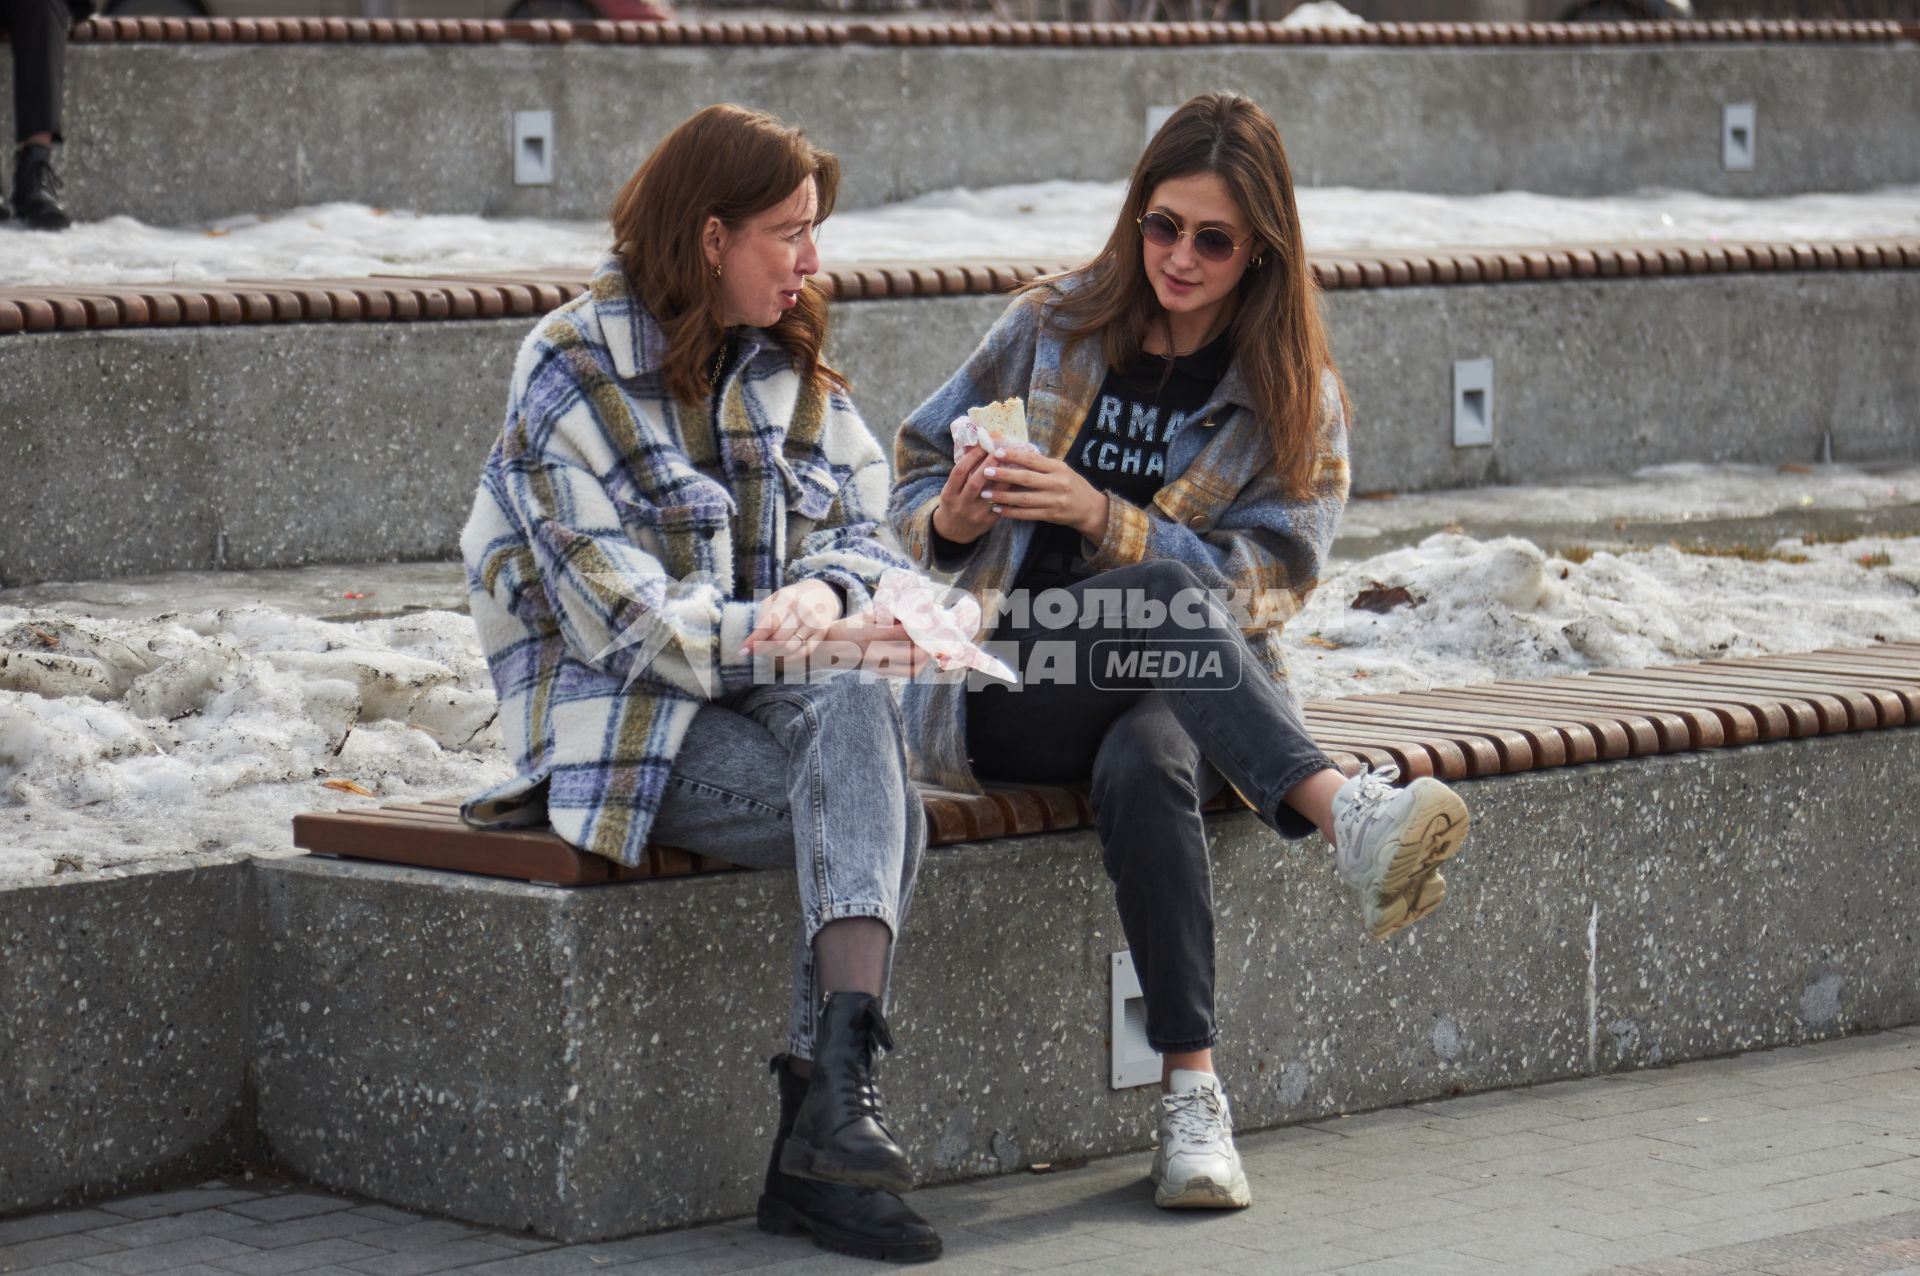 Пермь. Девушки отдыхают на скамейке.